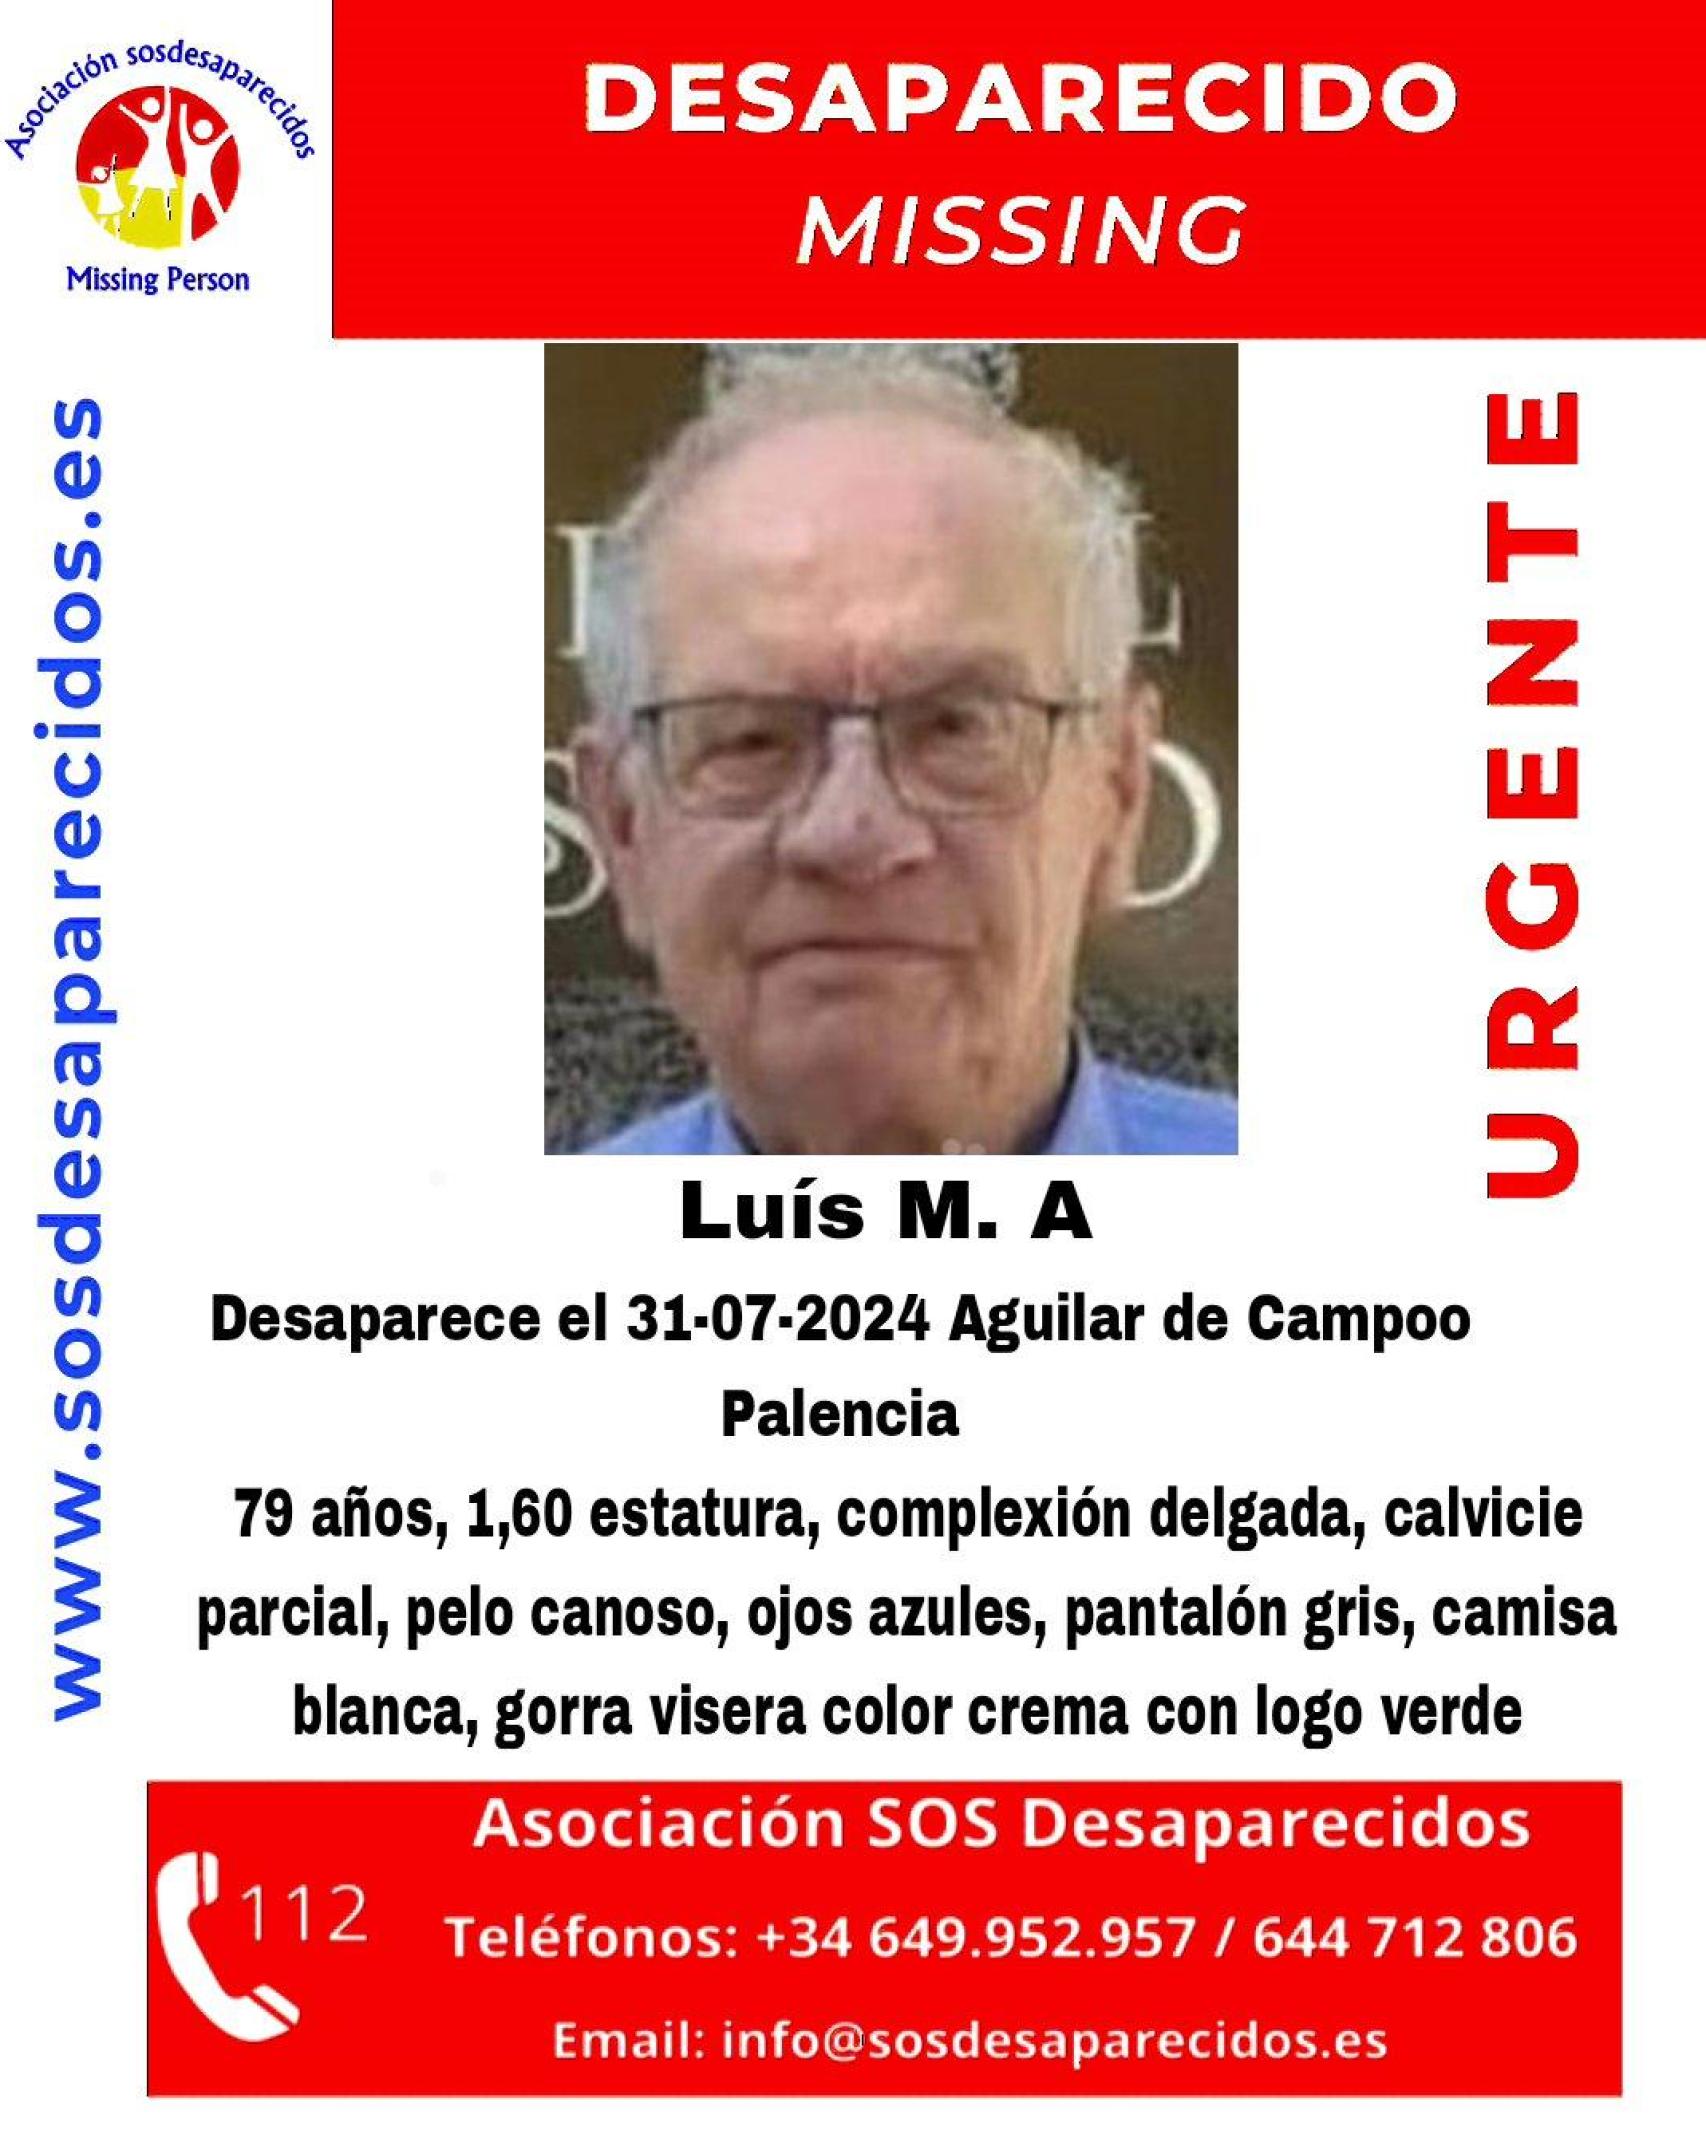 Luis, el desaparecido en Aguilar de Campoo